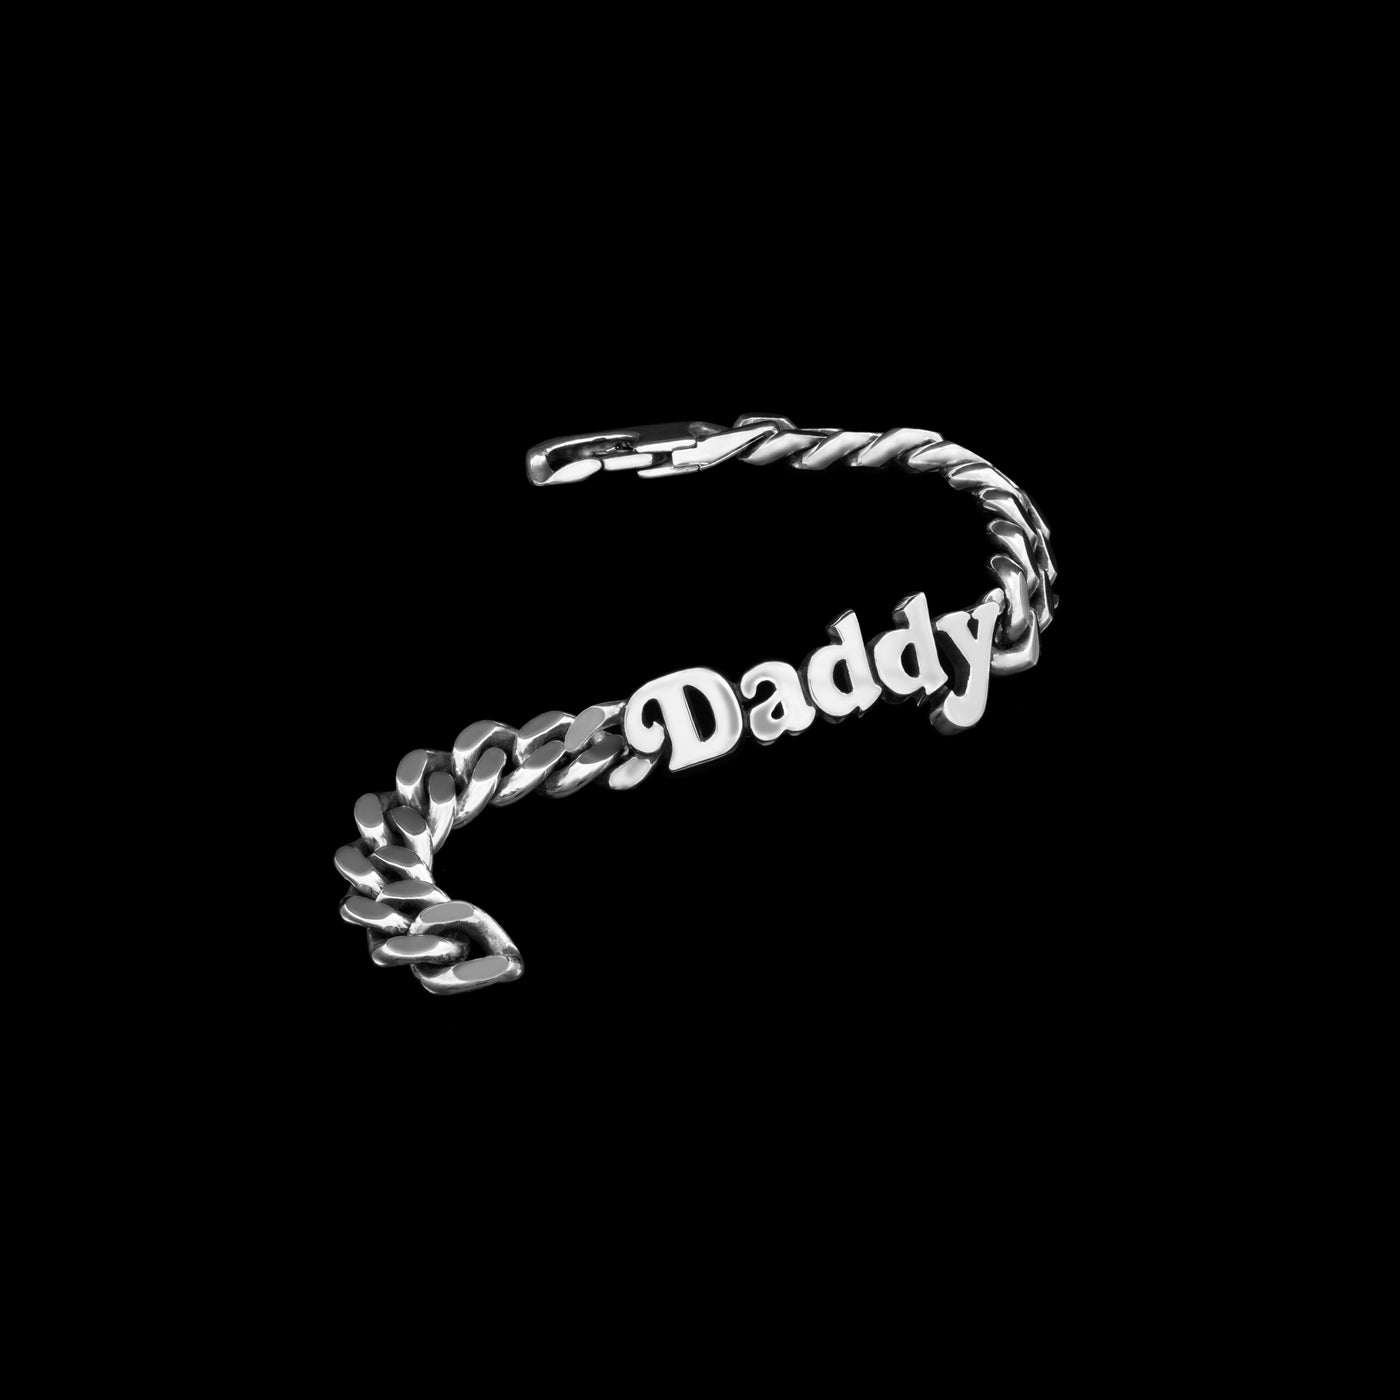 Daddy Bracelet